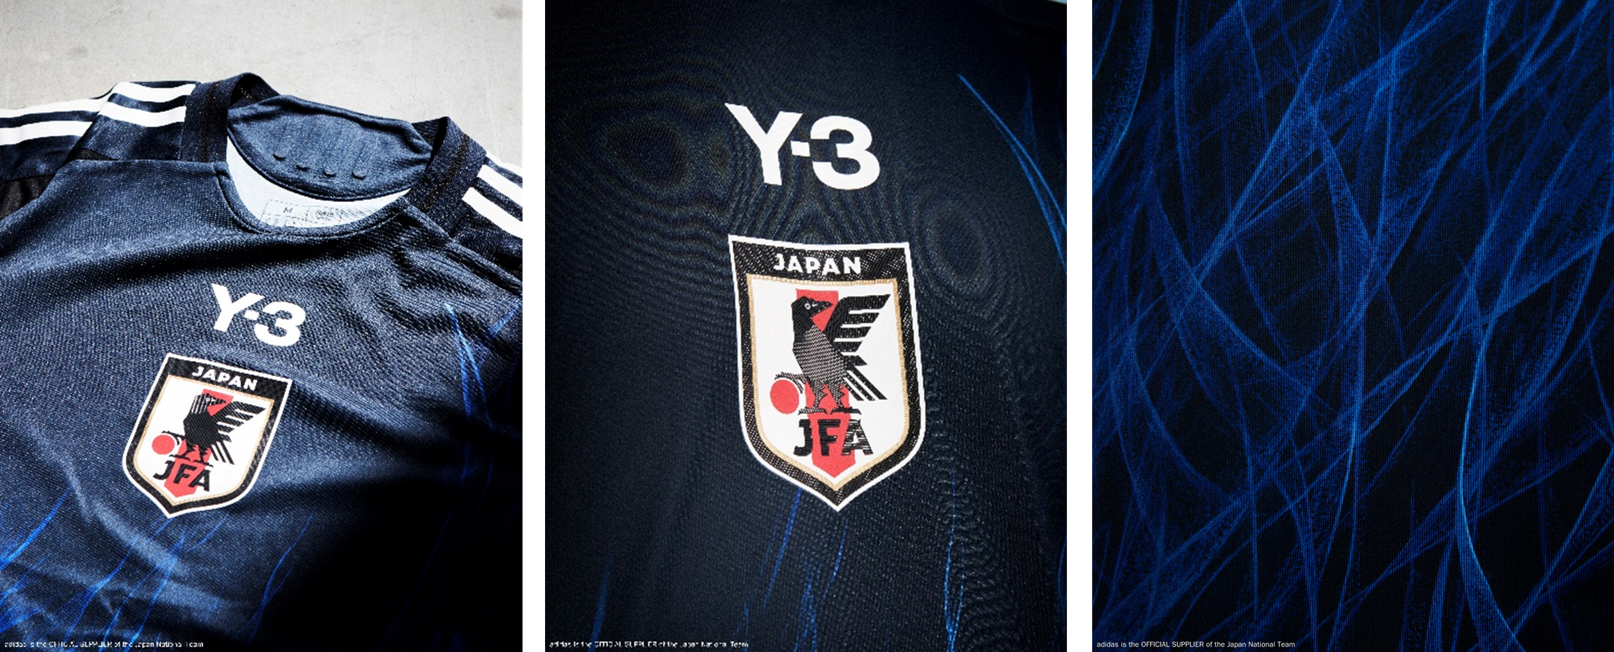 サッカー日本代表史上初「Y-3」とのコラボレーションが実現　燃え盛る「FIRE（炎）」のグラフィックが、サッ...